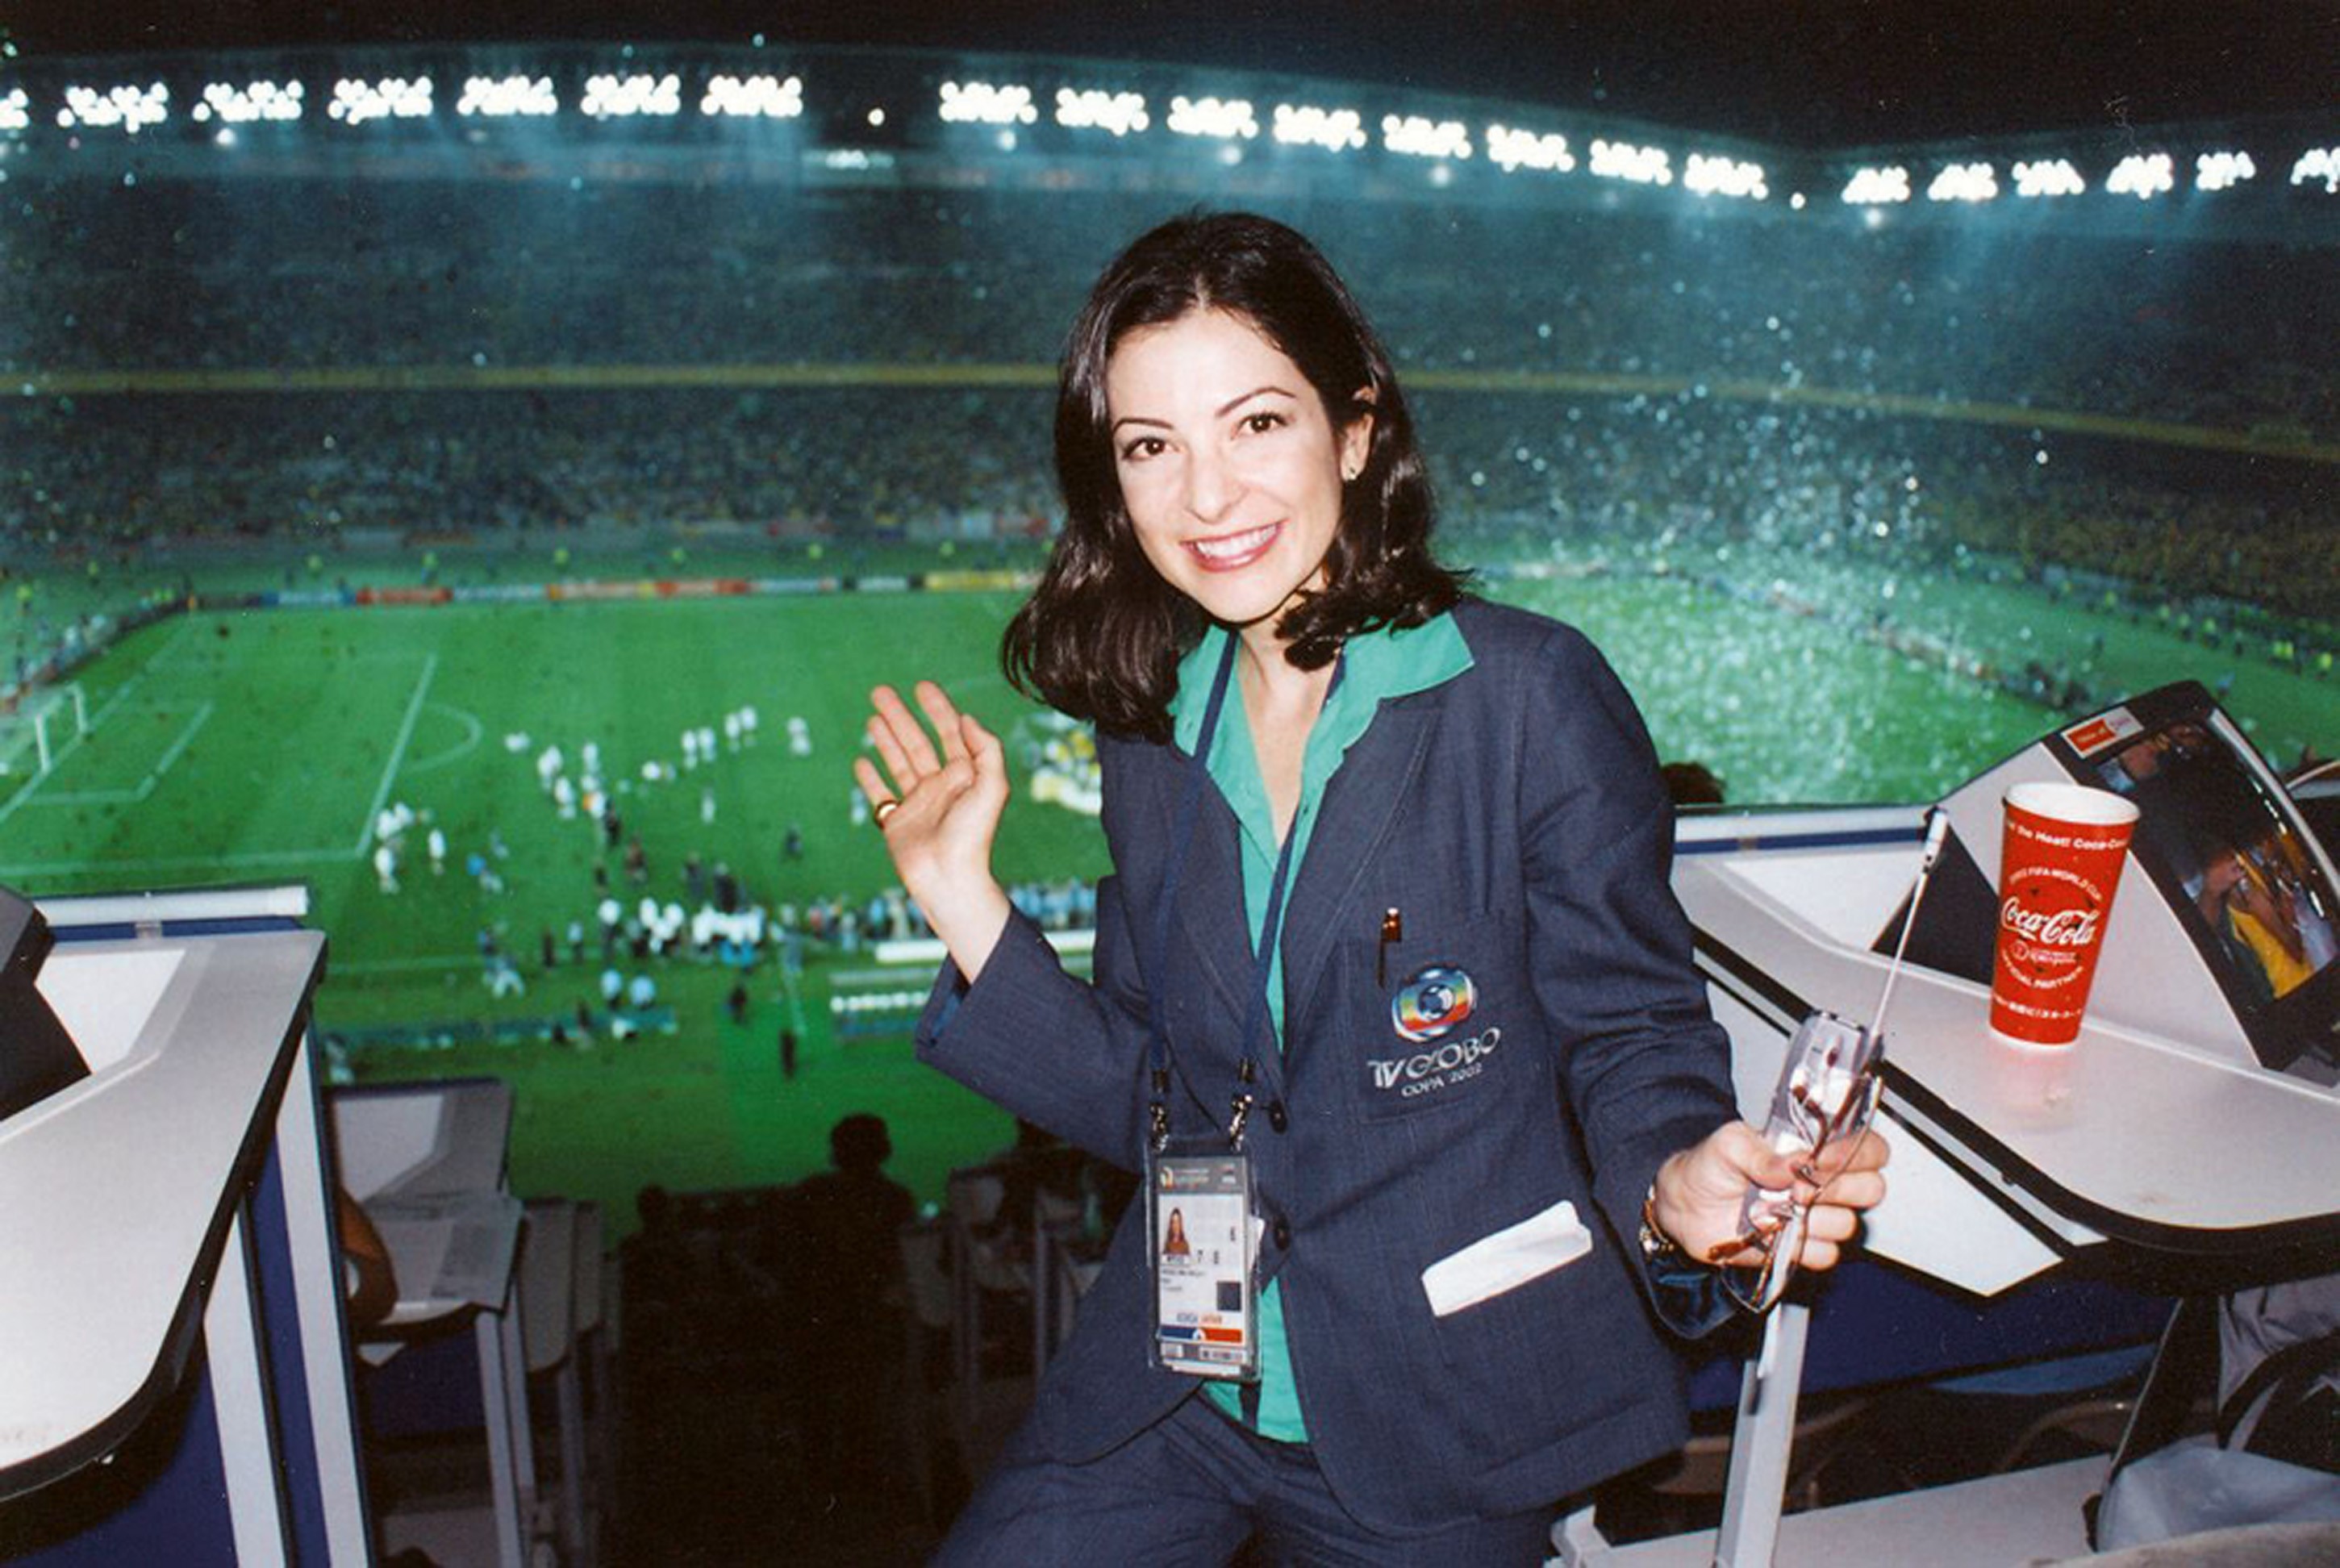 Em transmissão da final da Copa de 2002, no Japão, pela Globo